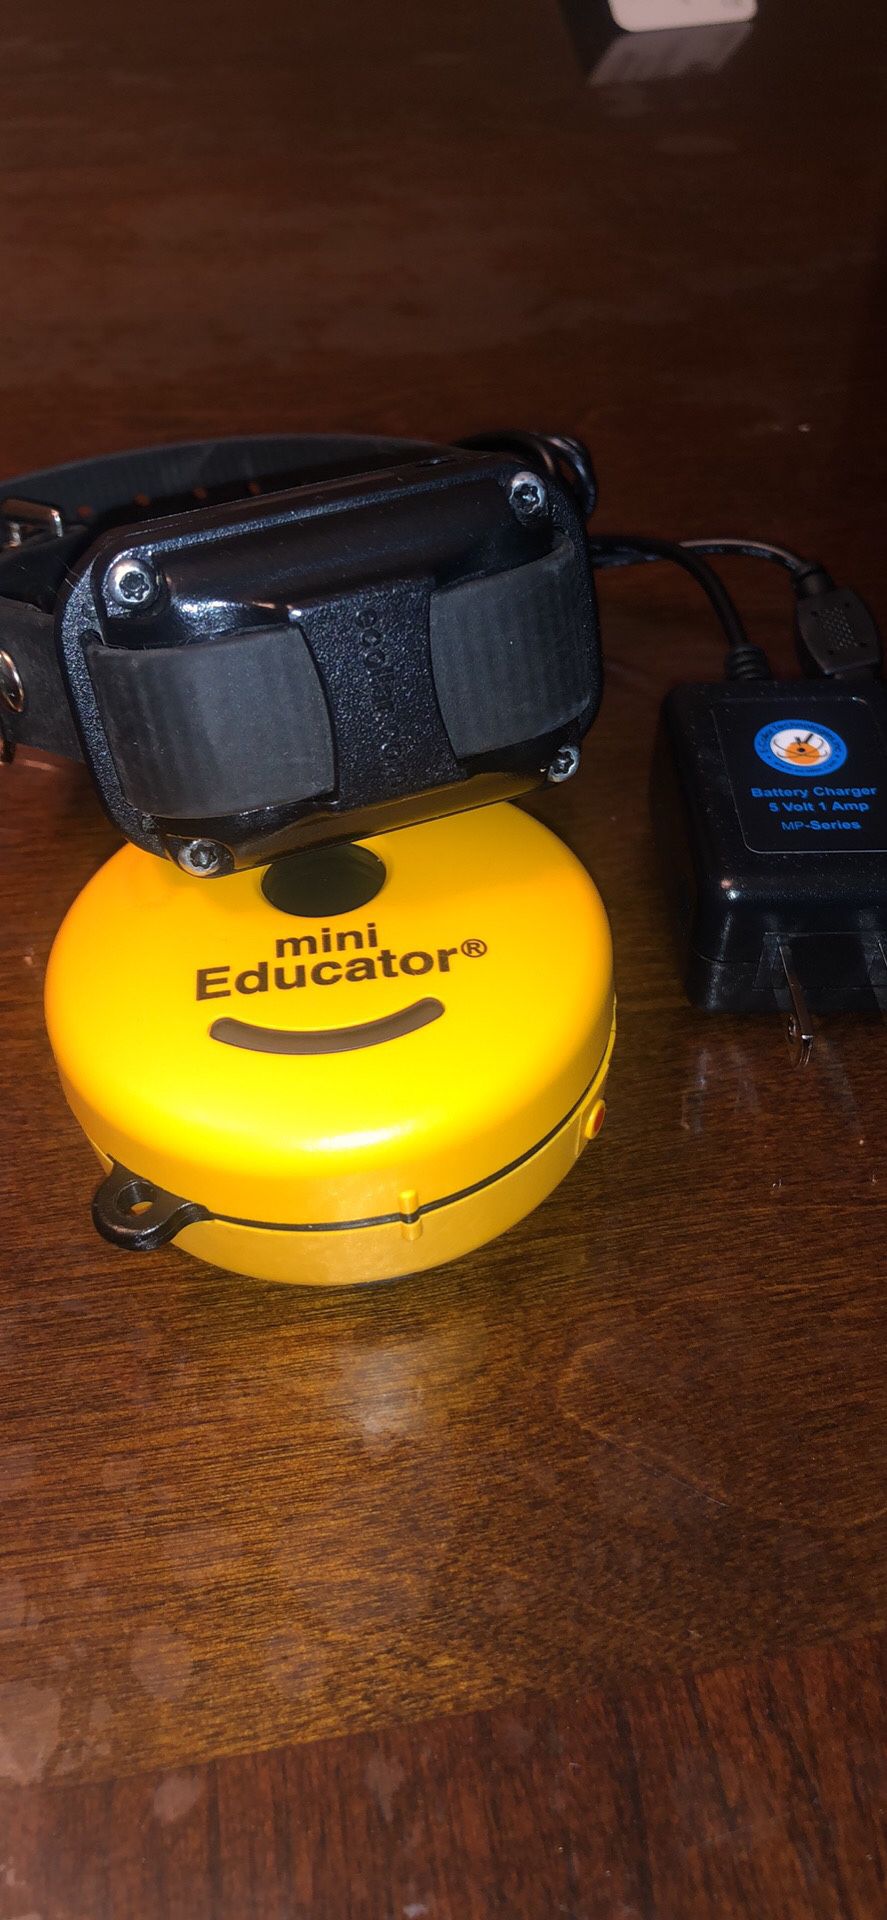 Mini educator